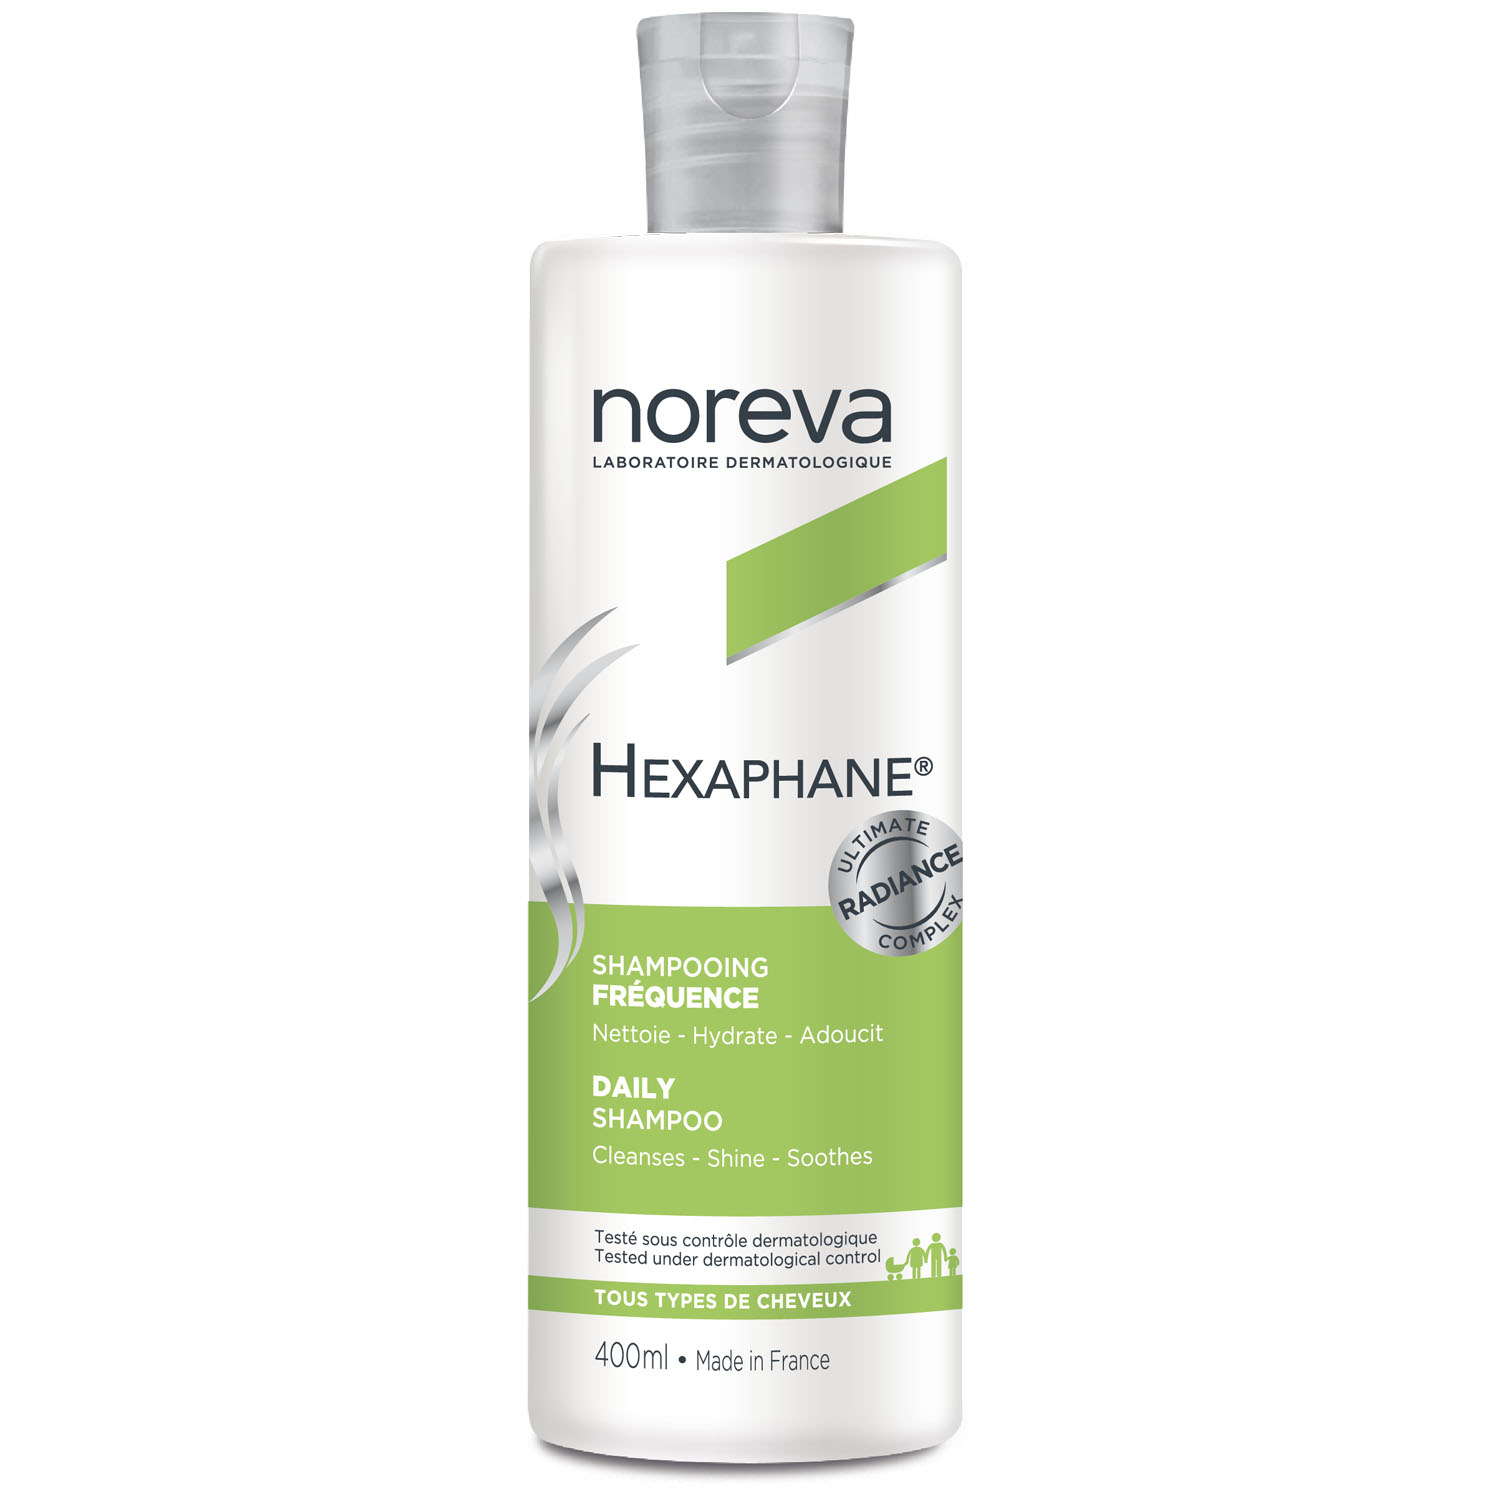 noreva шампунь для жирных волос oil control shampoo 250 мл noreva hexaphane Noreva Шампунь для ежедневного применения, 400 мл (Noreva, Hexaphane)